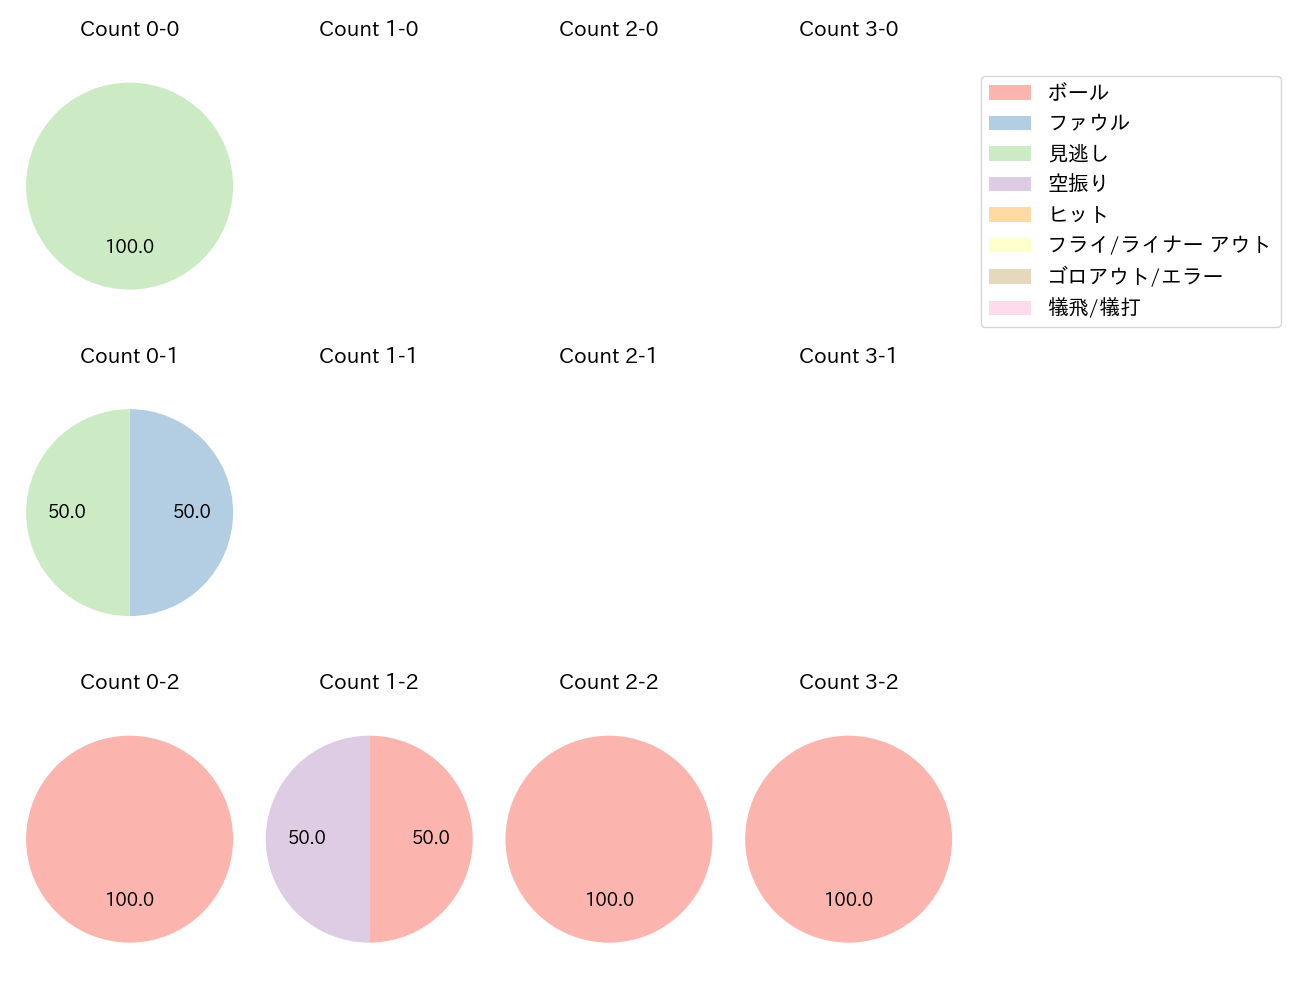 髙田 知季の球数分布(2021年4月)